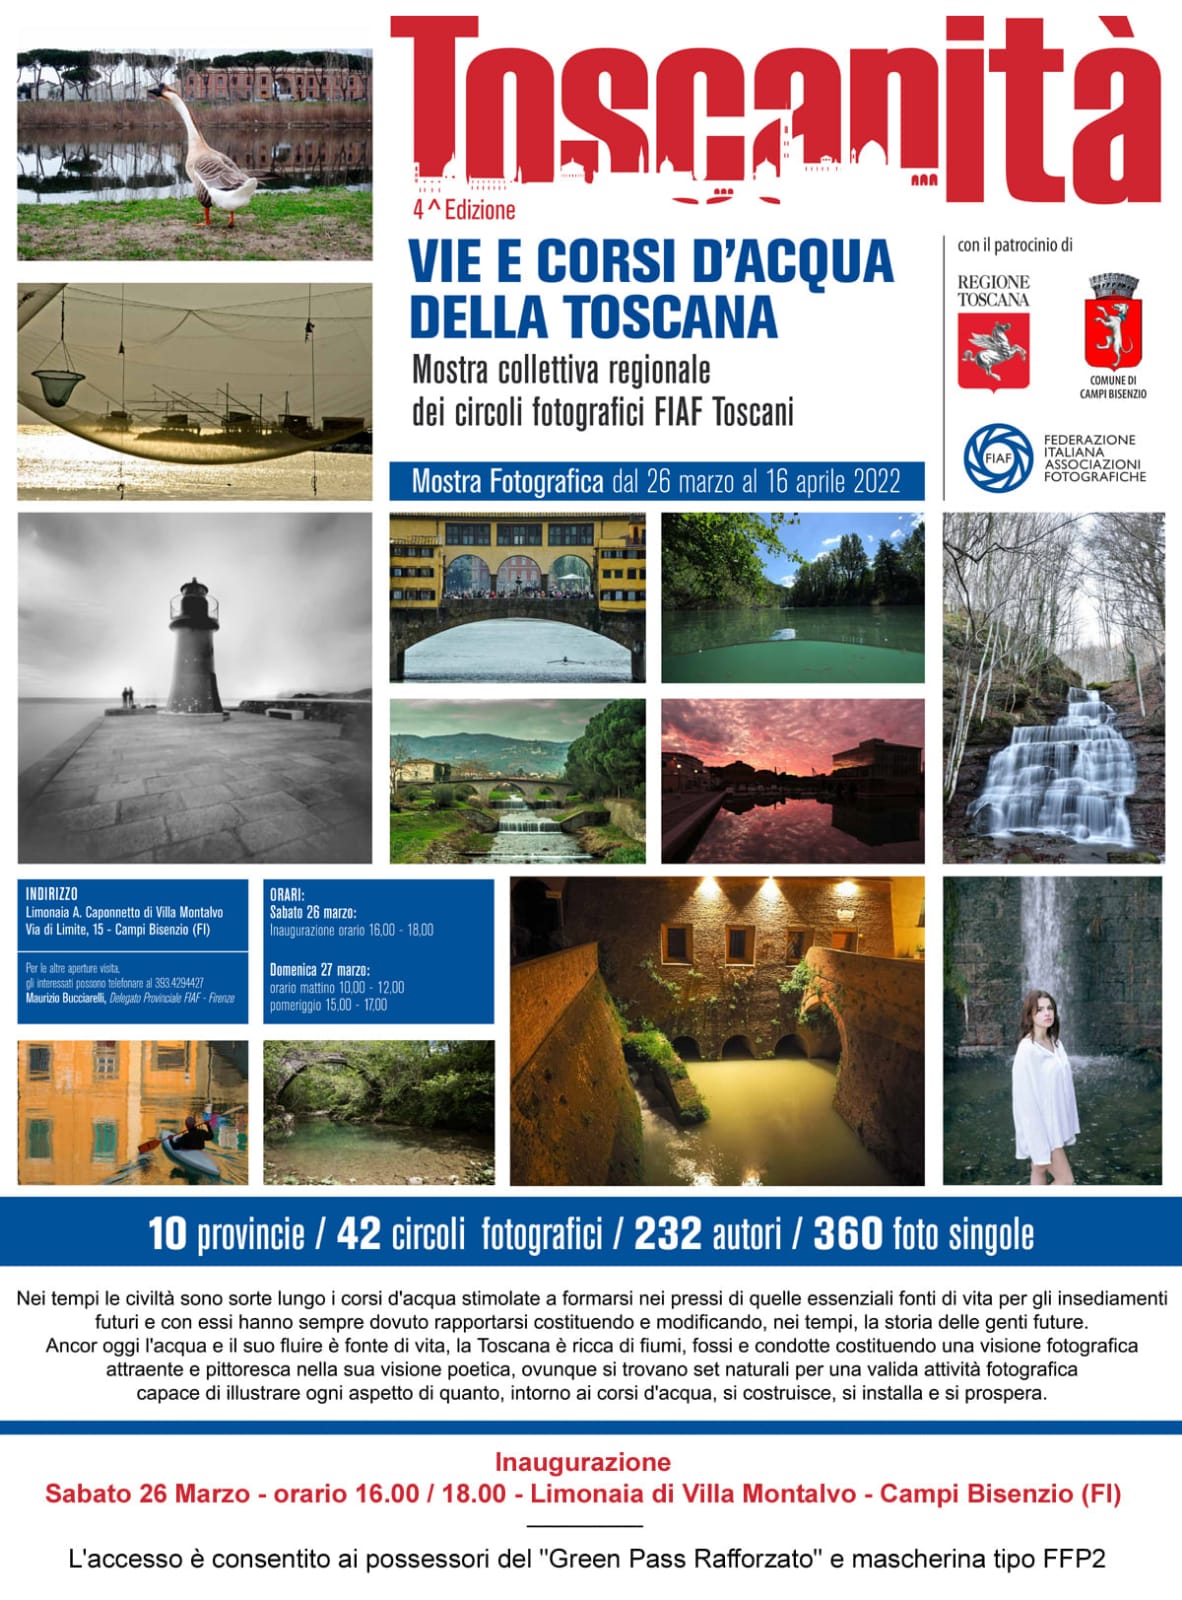 Toscanità, Vie e Corsi d’acqua della Toscana